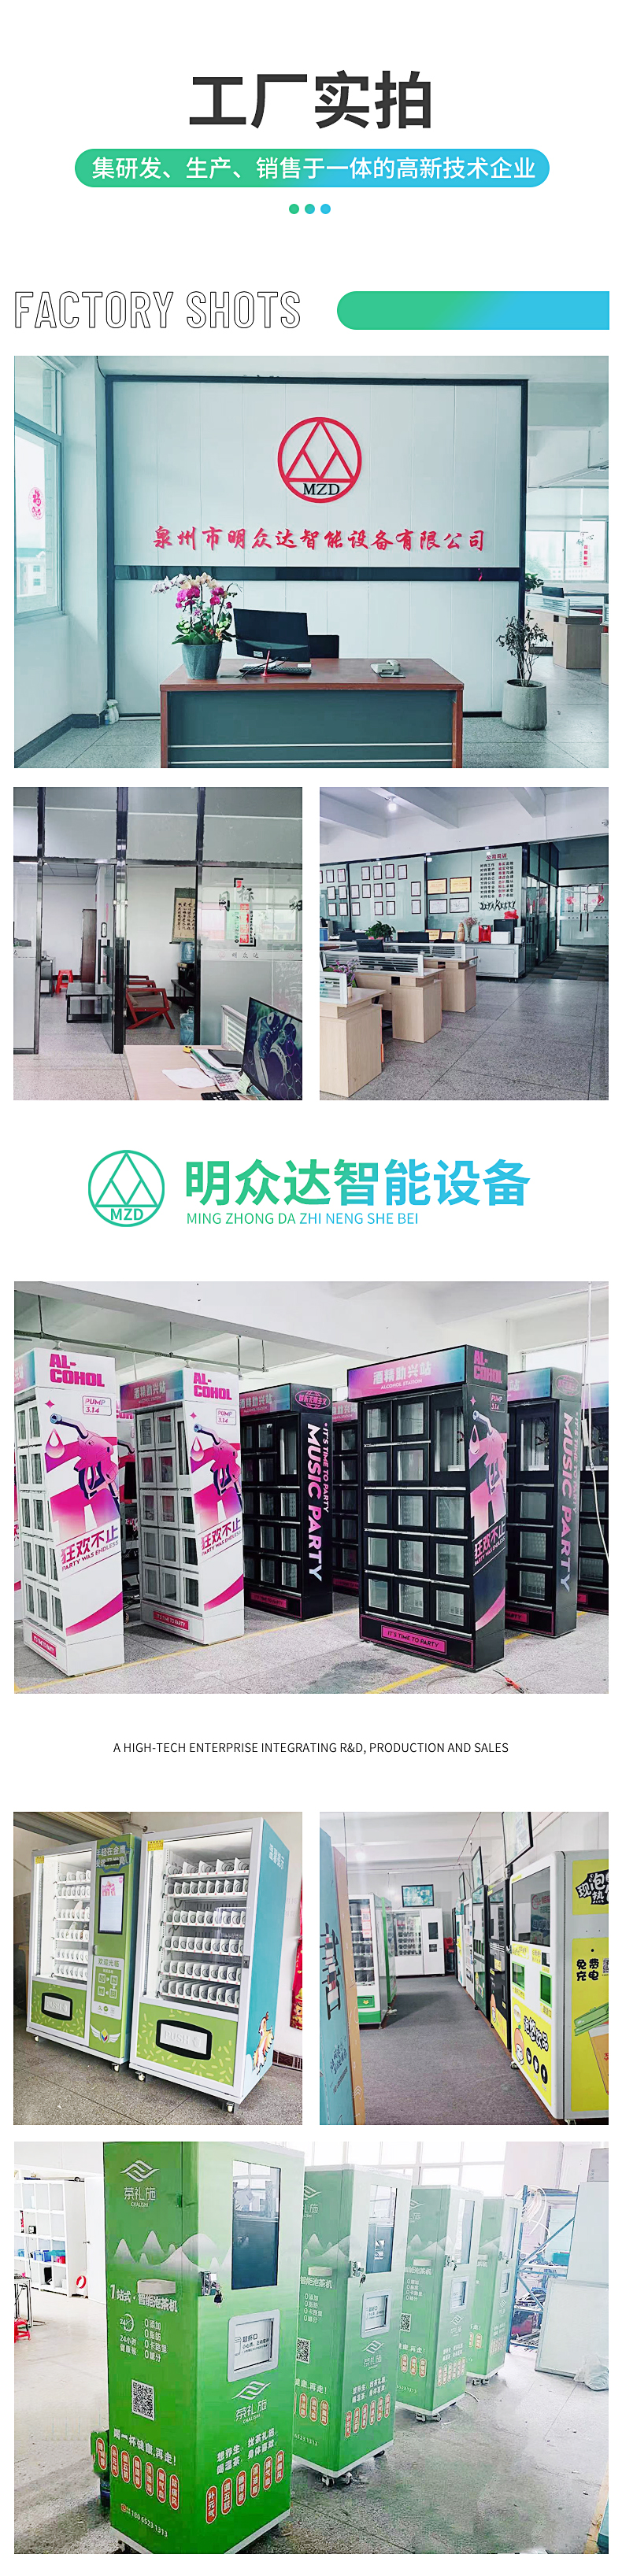 南京冷藏型综合售货机